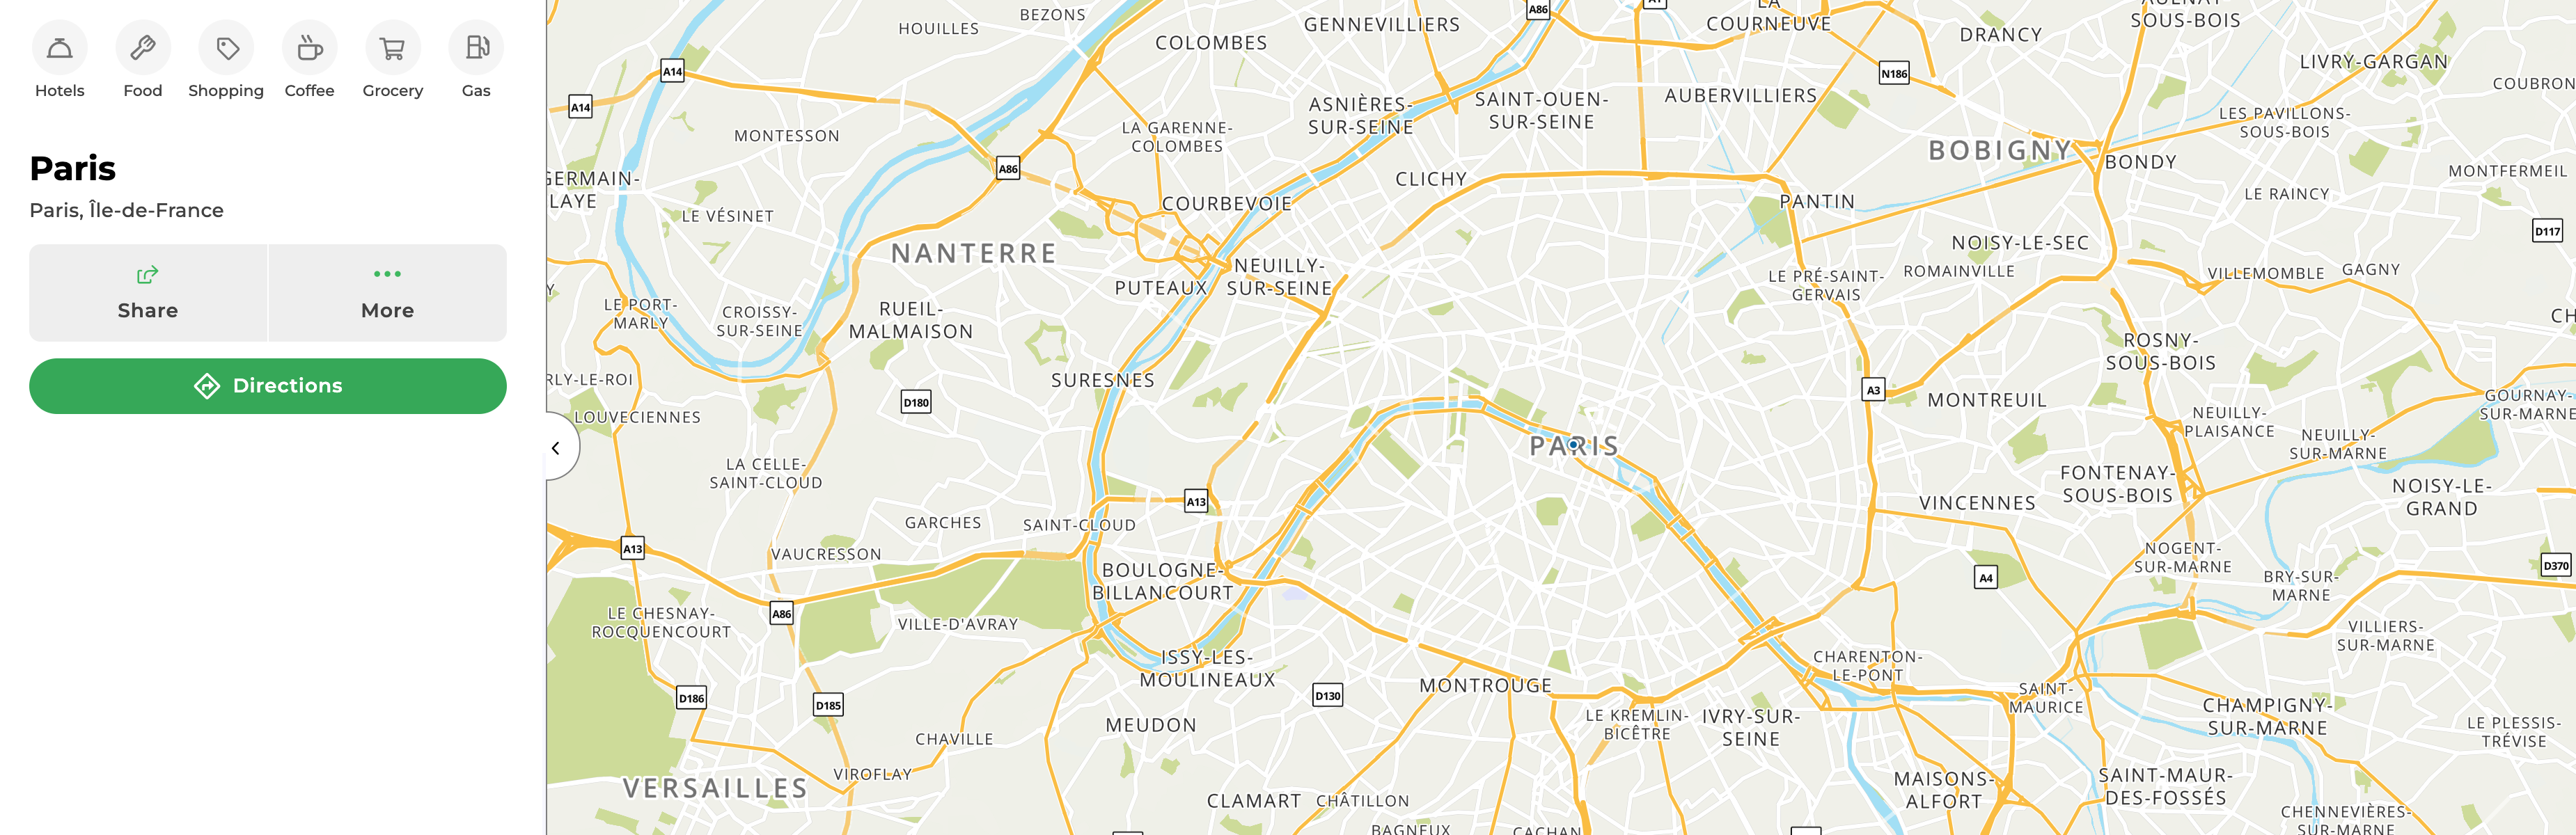 Mapquest Paris, France